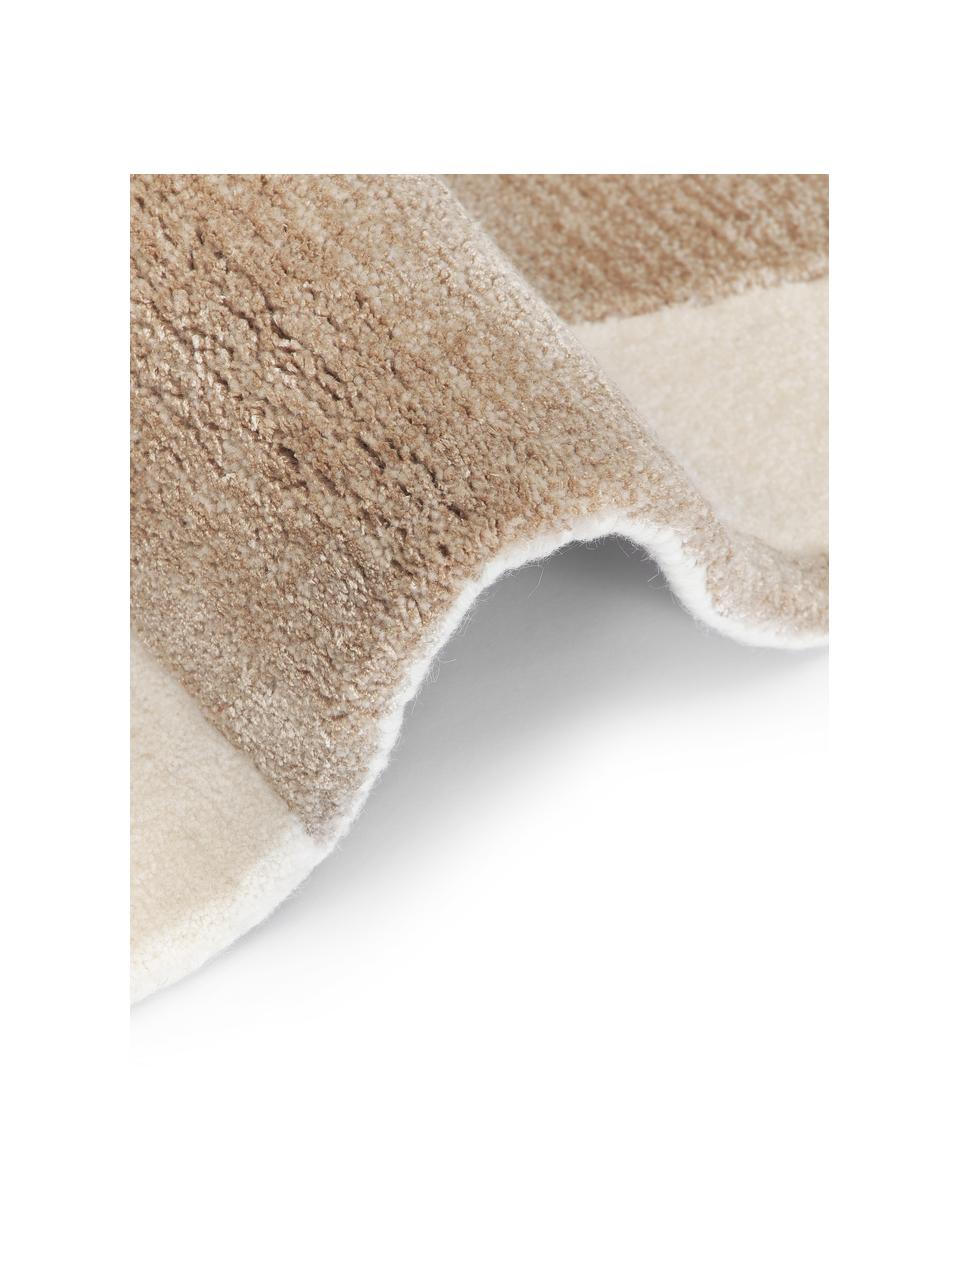 Tappeto in lana toupe/bianco crema taftato a mano con struttura alta-bassa Corin, Retro: 100% cotone Nel caso dei , Marrone, beige, Larg. 80 x Lung. 150 cm (taglia XS)